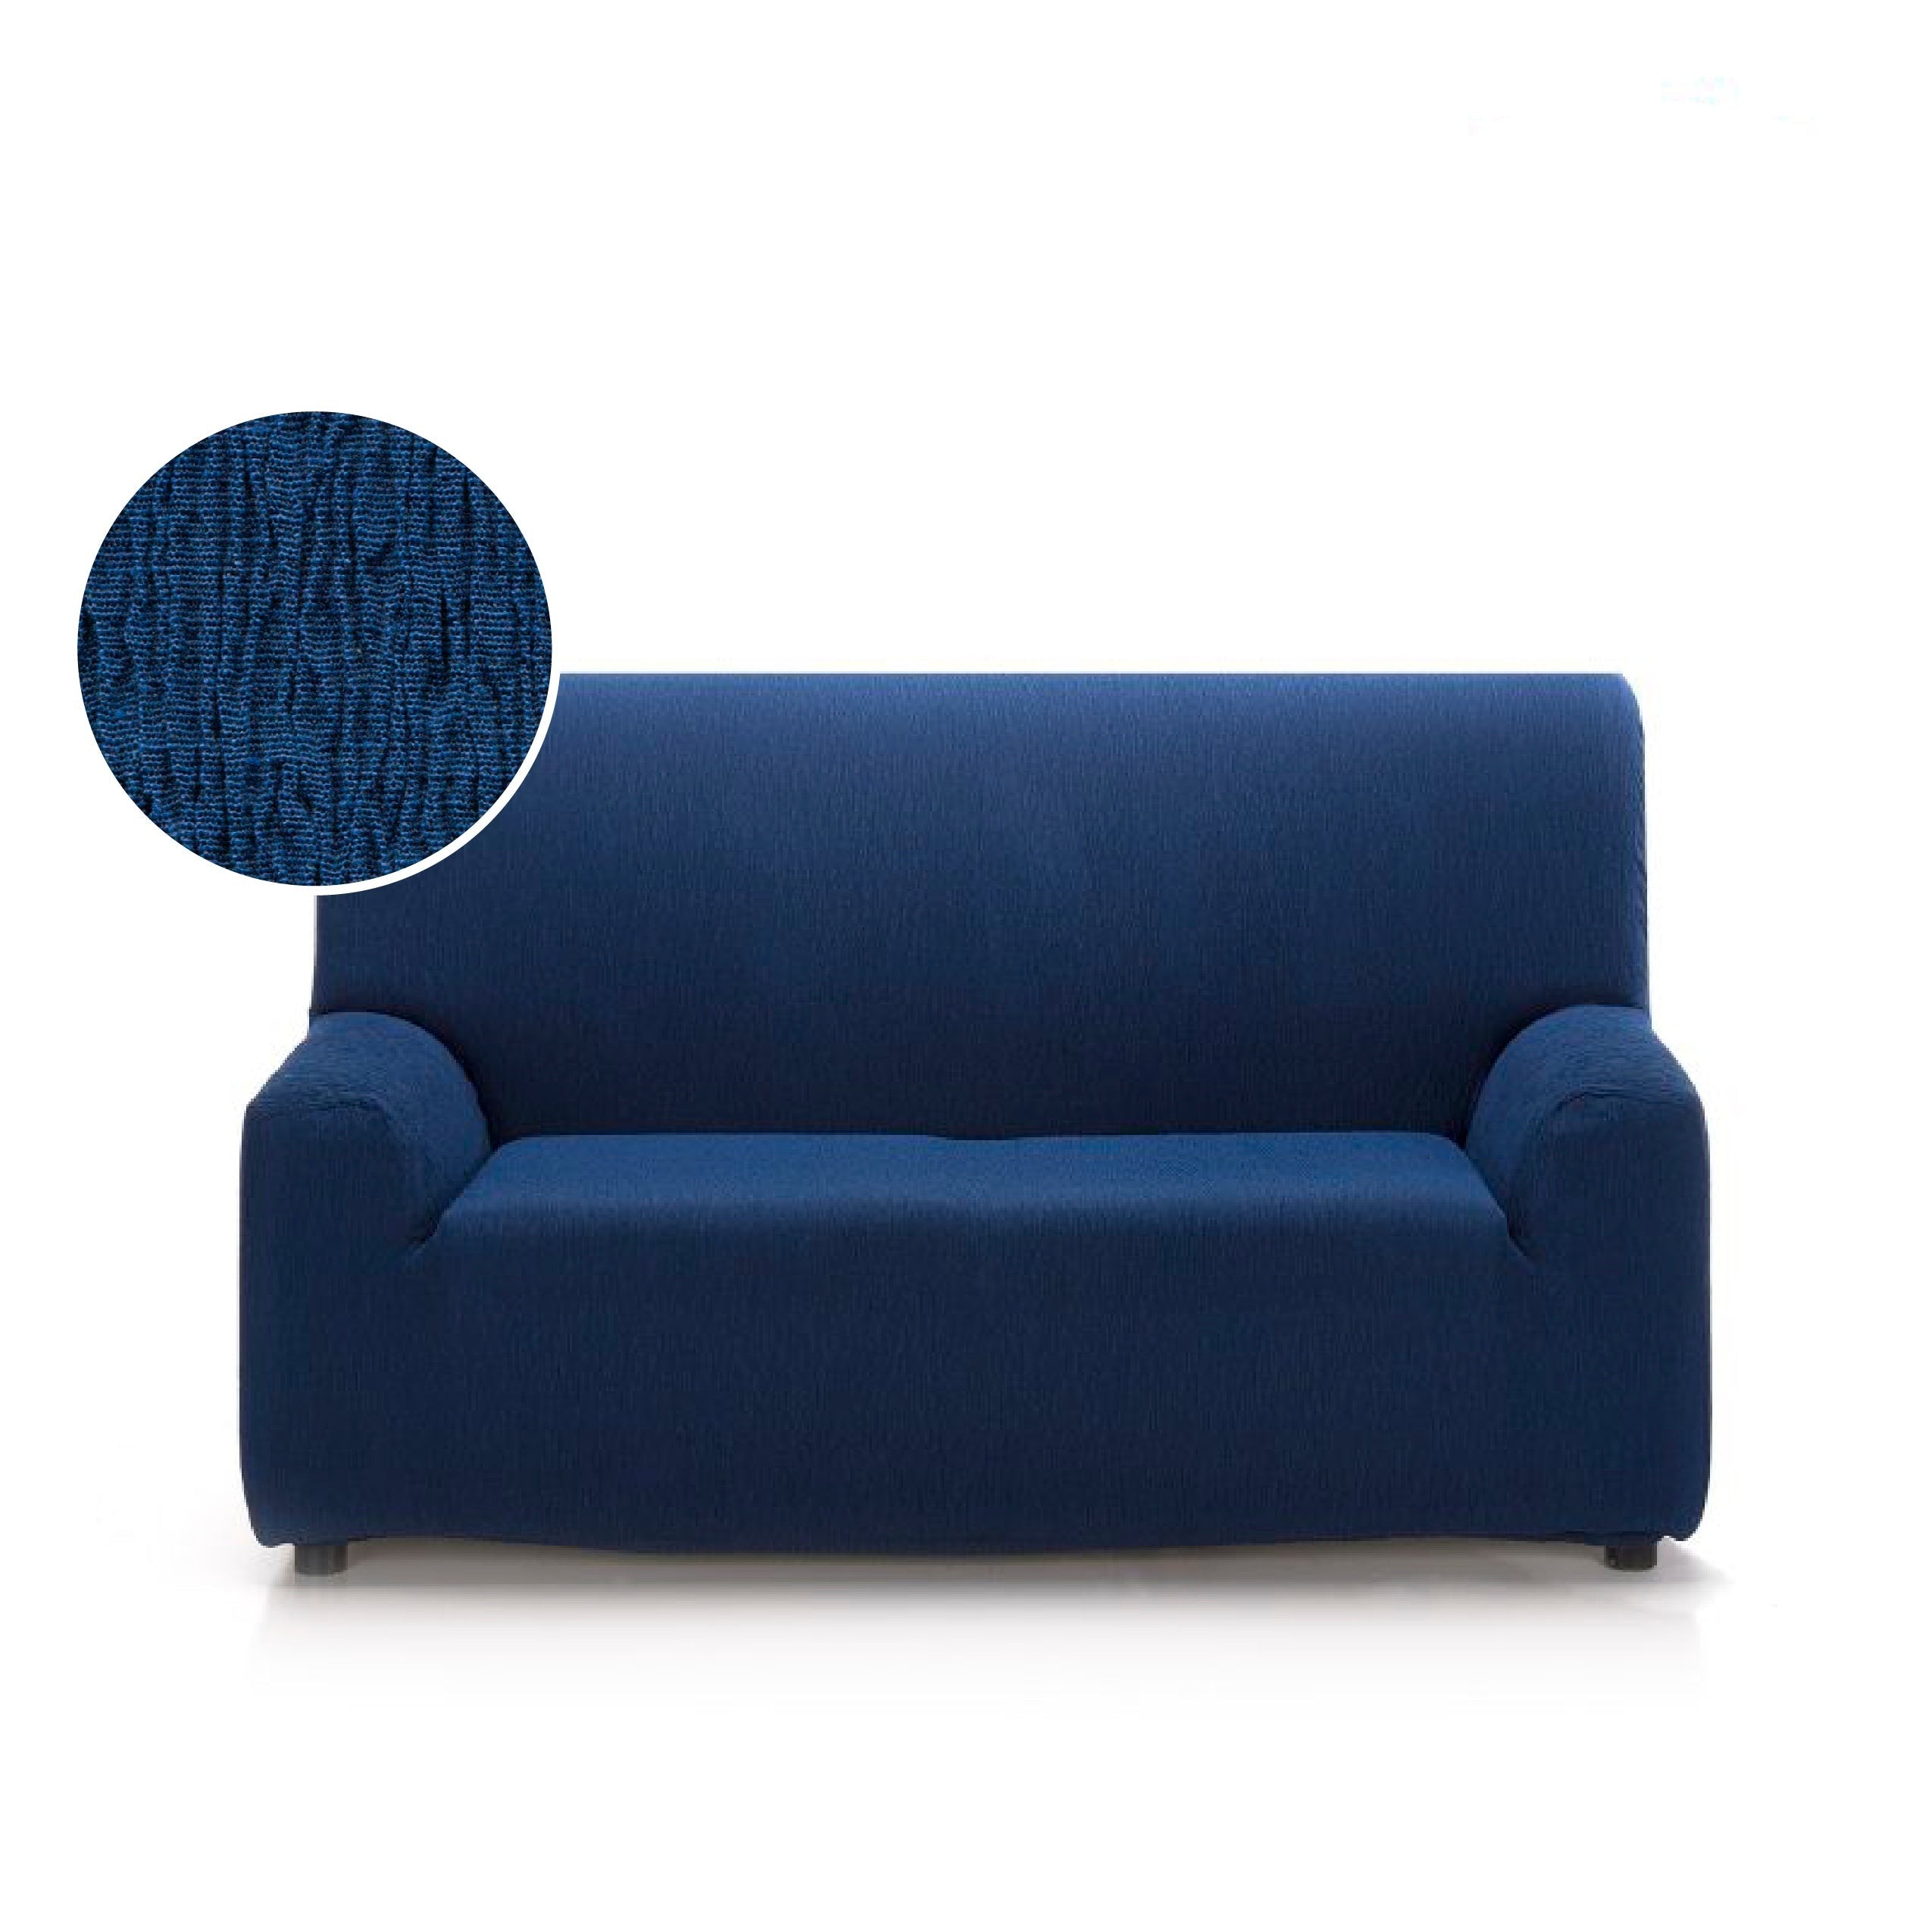  JLKC Funda protectora para sofá cama Clic Clac, funda  protectora de futón elástica de elastano, antideslizante y elástica para  2-3 plazas (color #8, tamaño: 59.1-70.9 in) : Hogar y Cocina